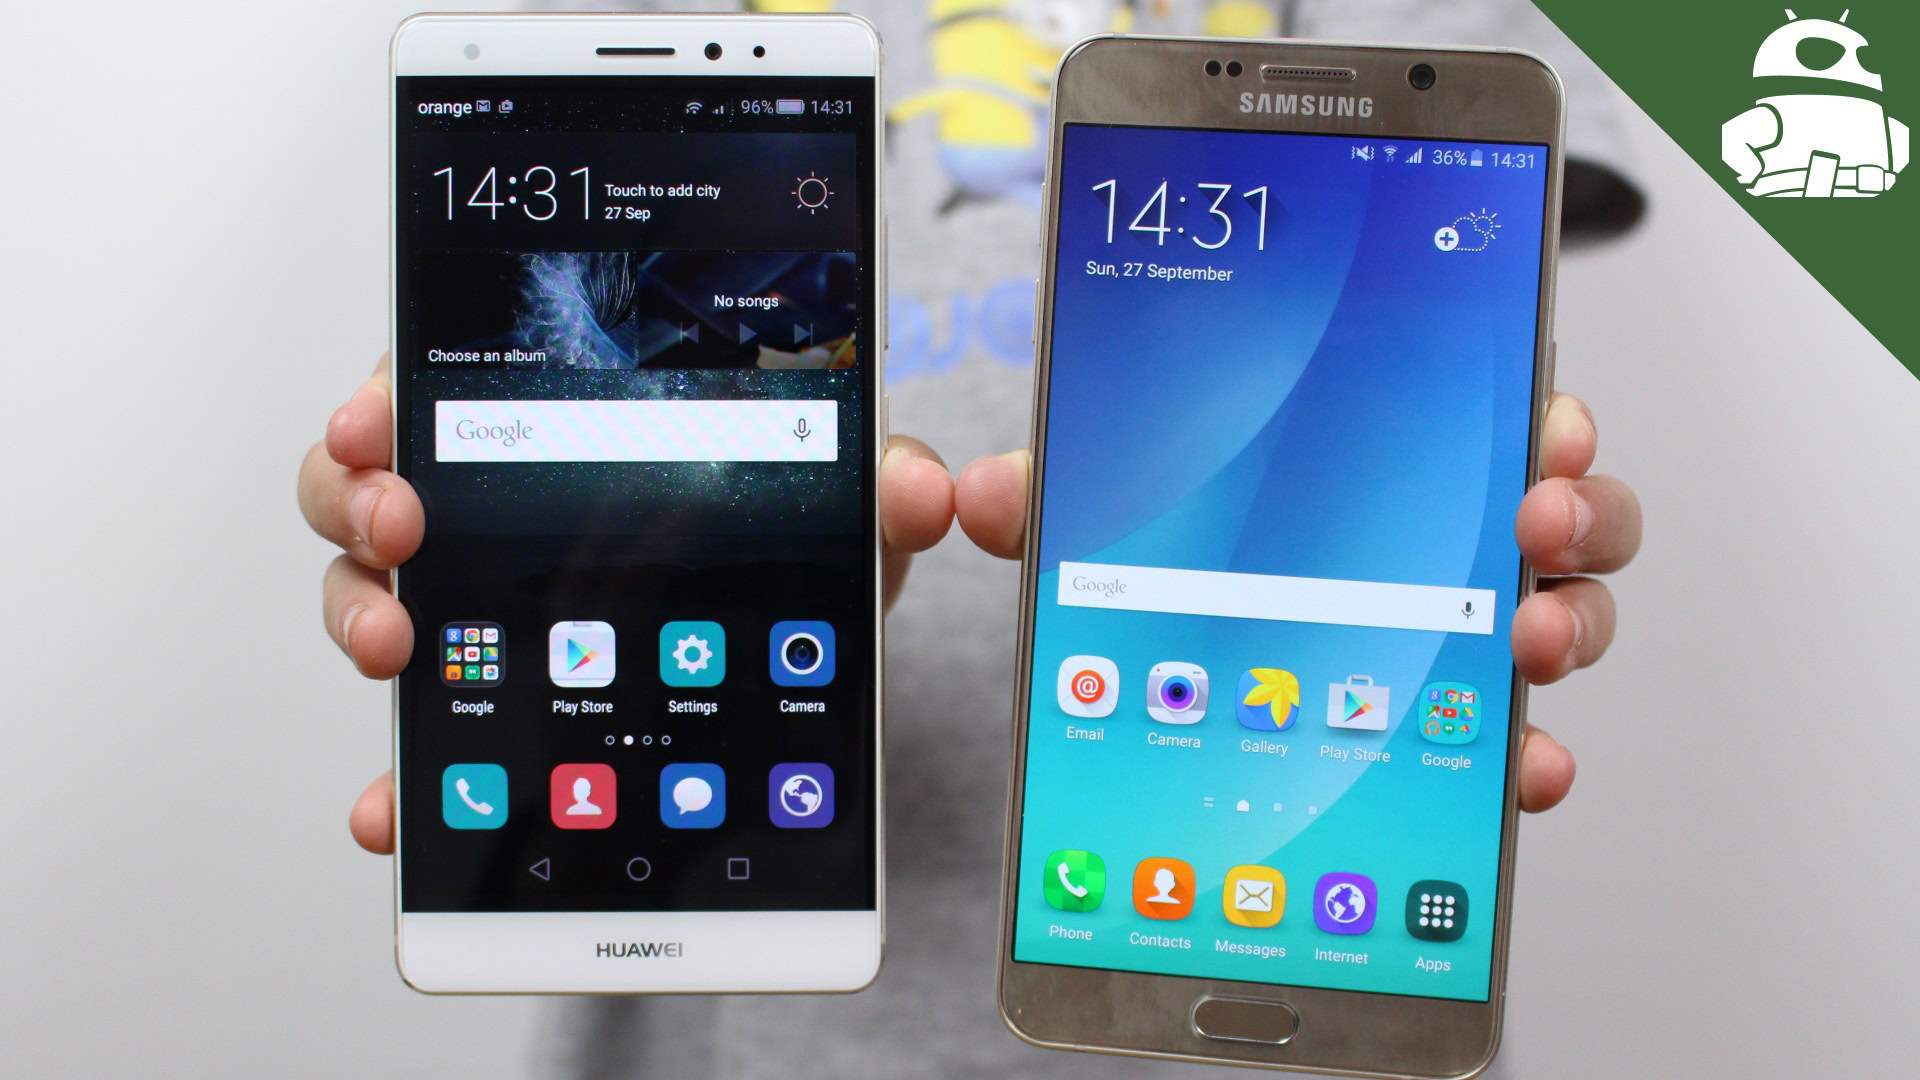 Heup eten Snel Samsung Galaxy Note 5 vs HUAWEI Mate S - quick look